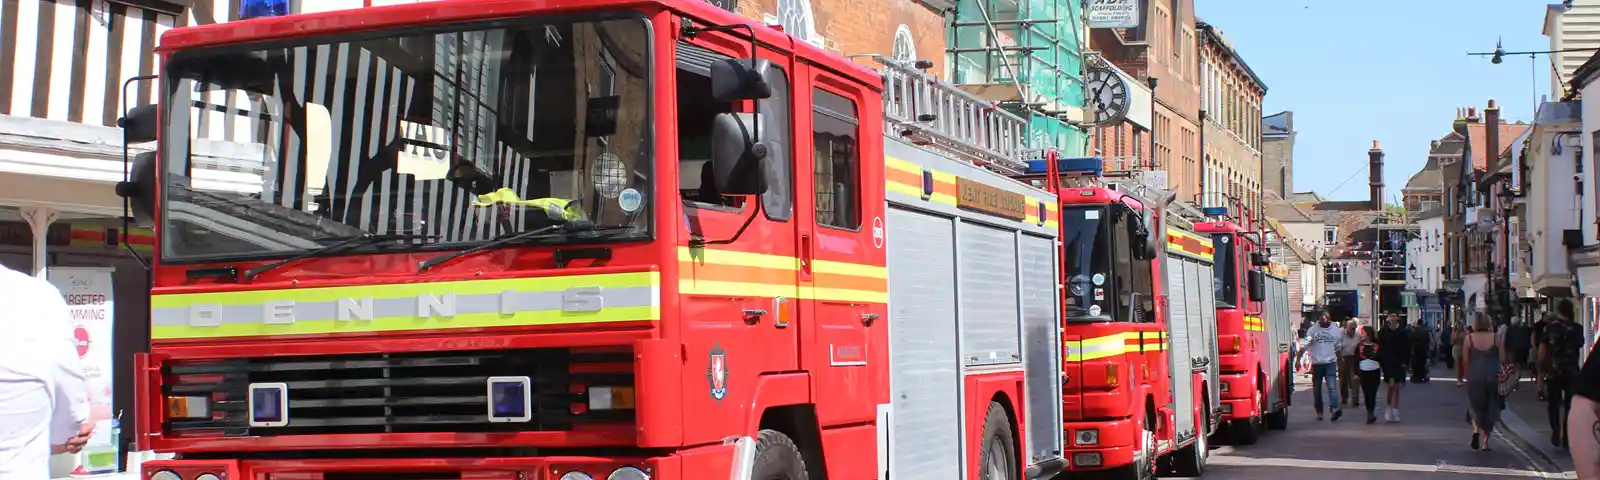 FOT22 Fire Engines In Preston Street